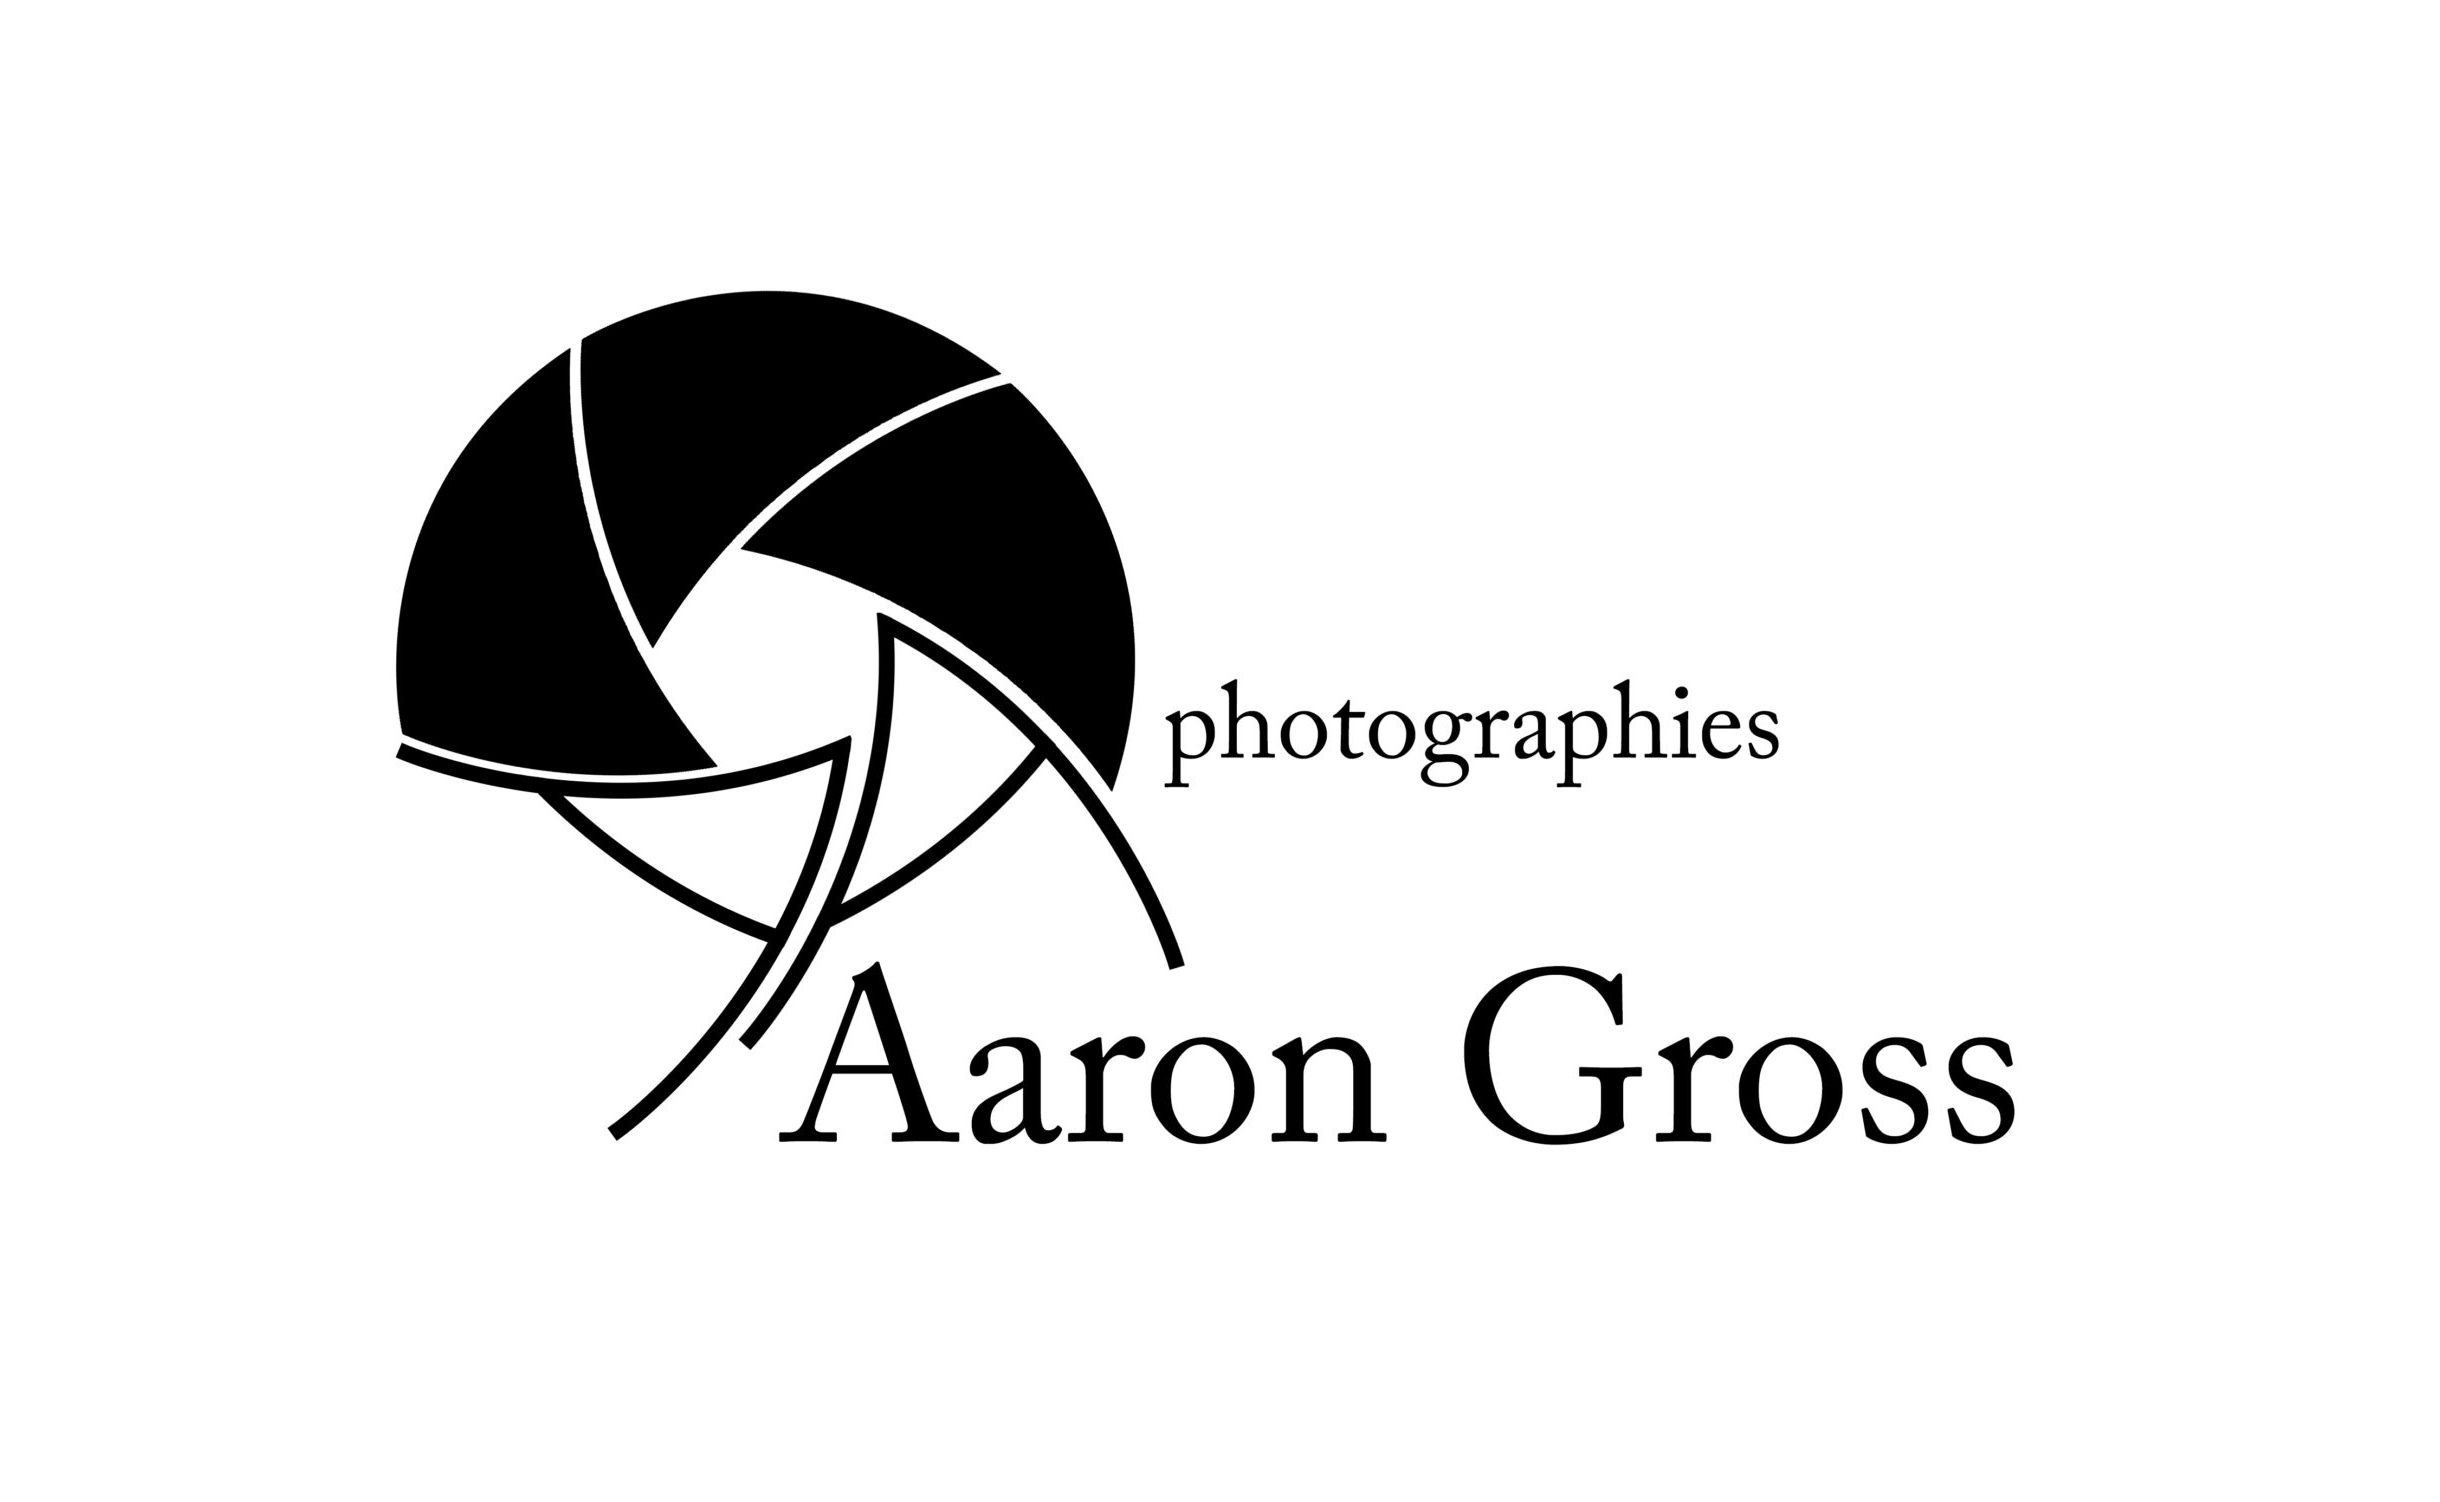 Aaron Gross Photographies